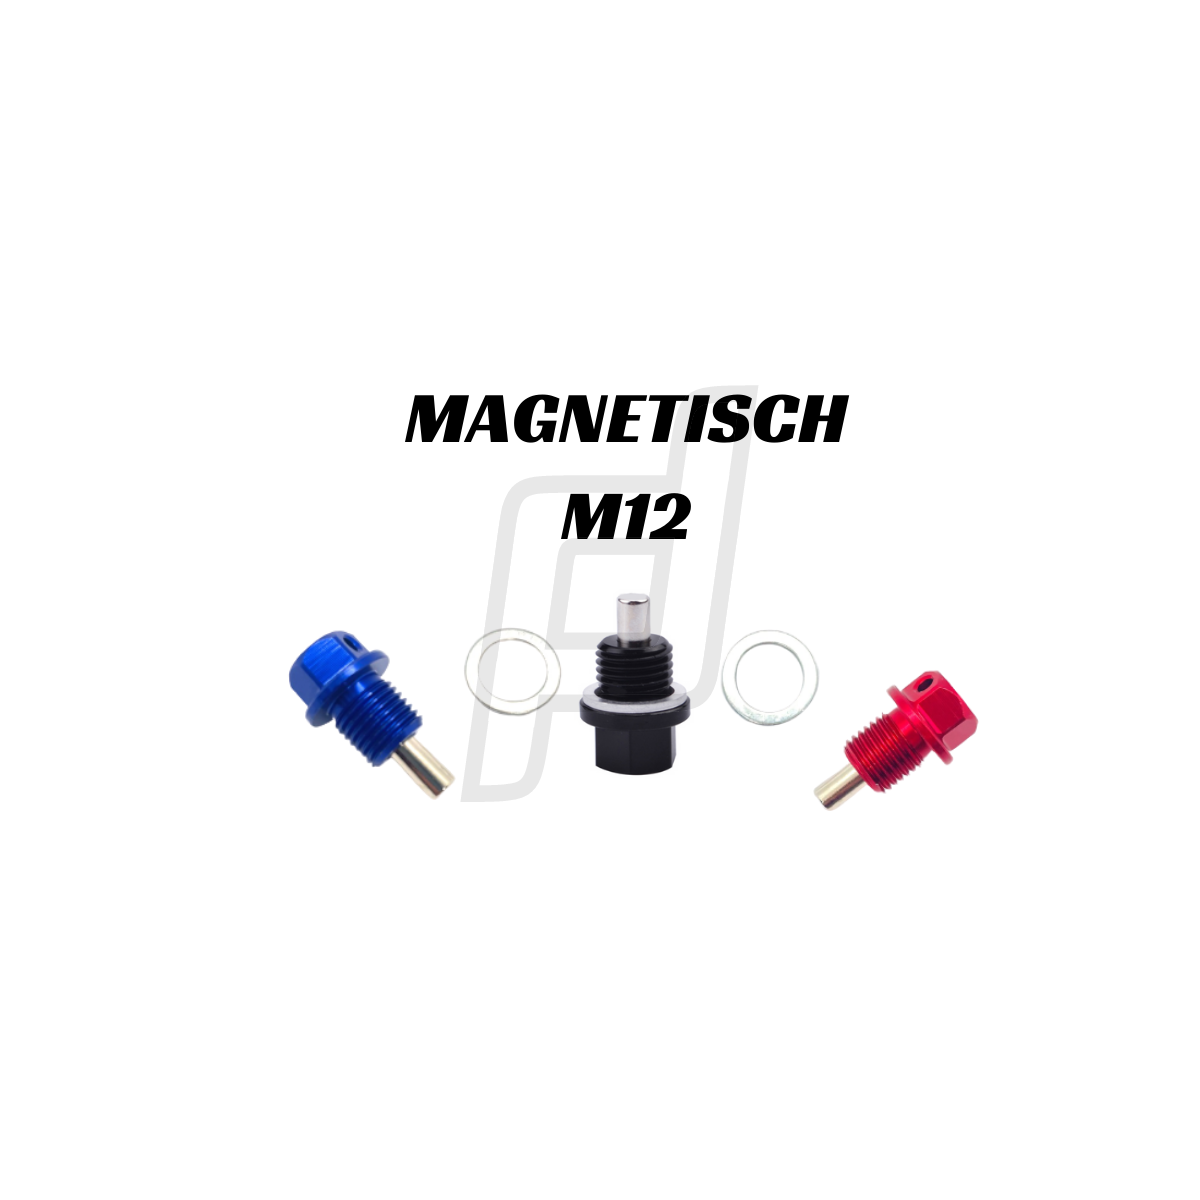 Ölablassschraube magnetisch M12, 6,90 €